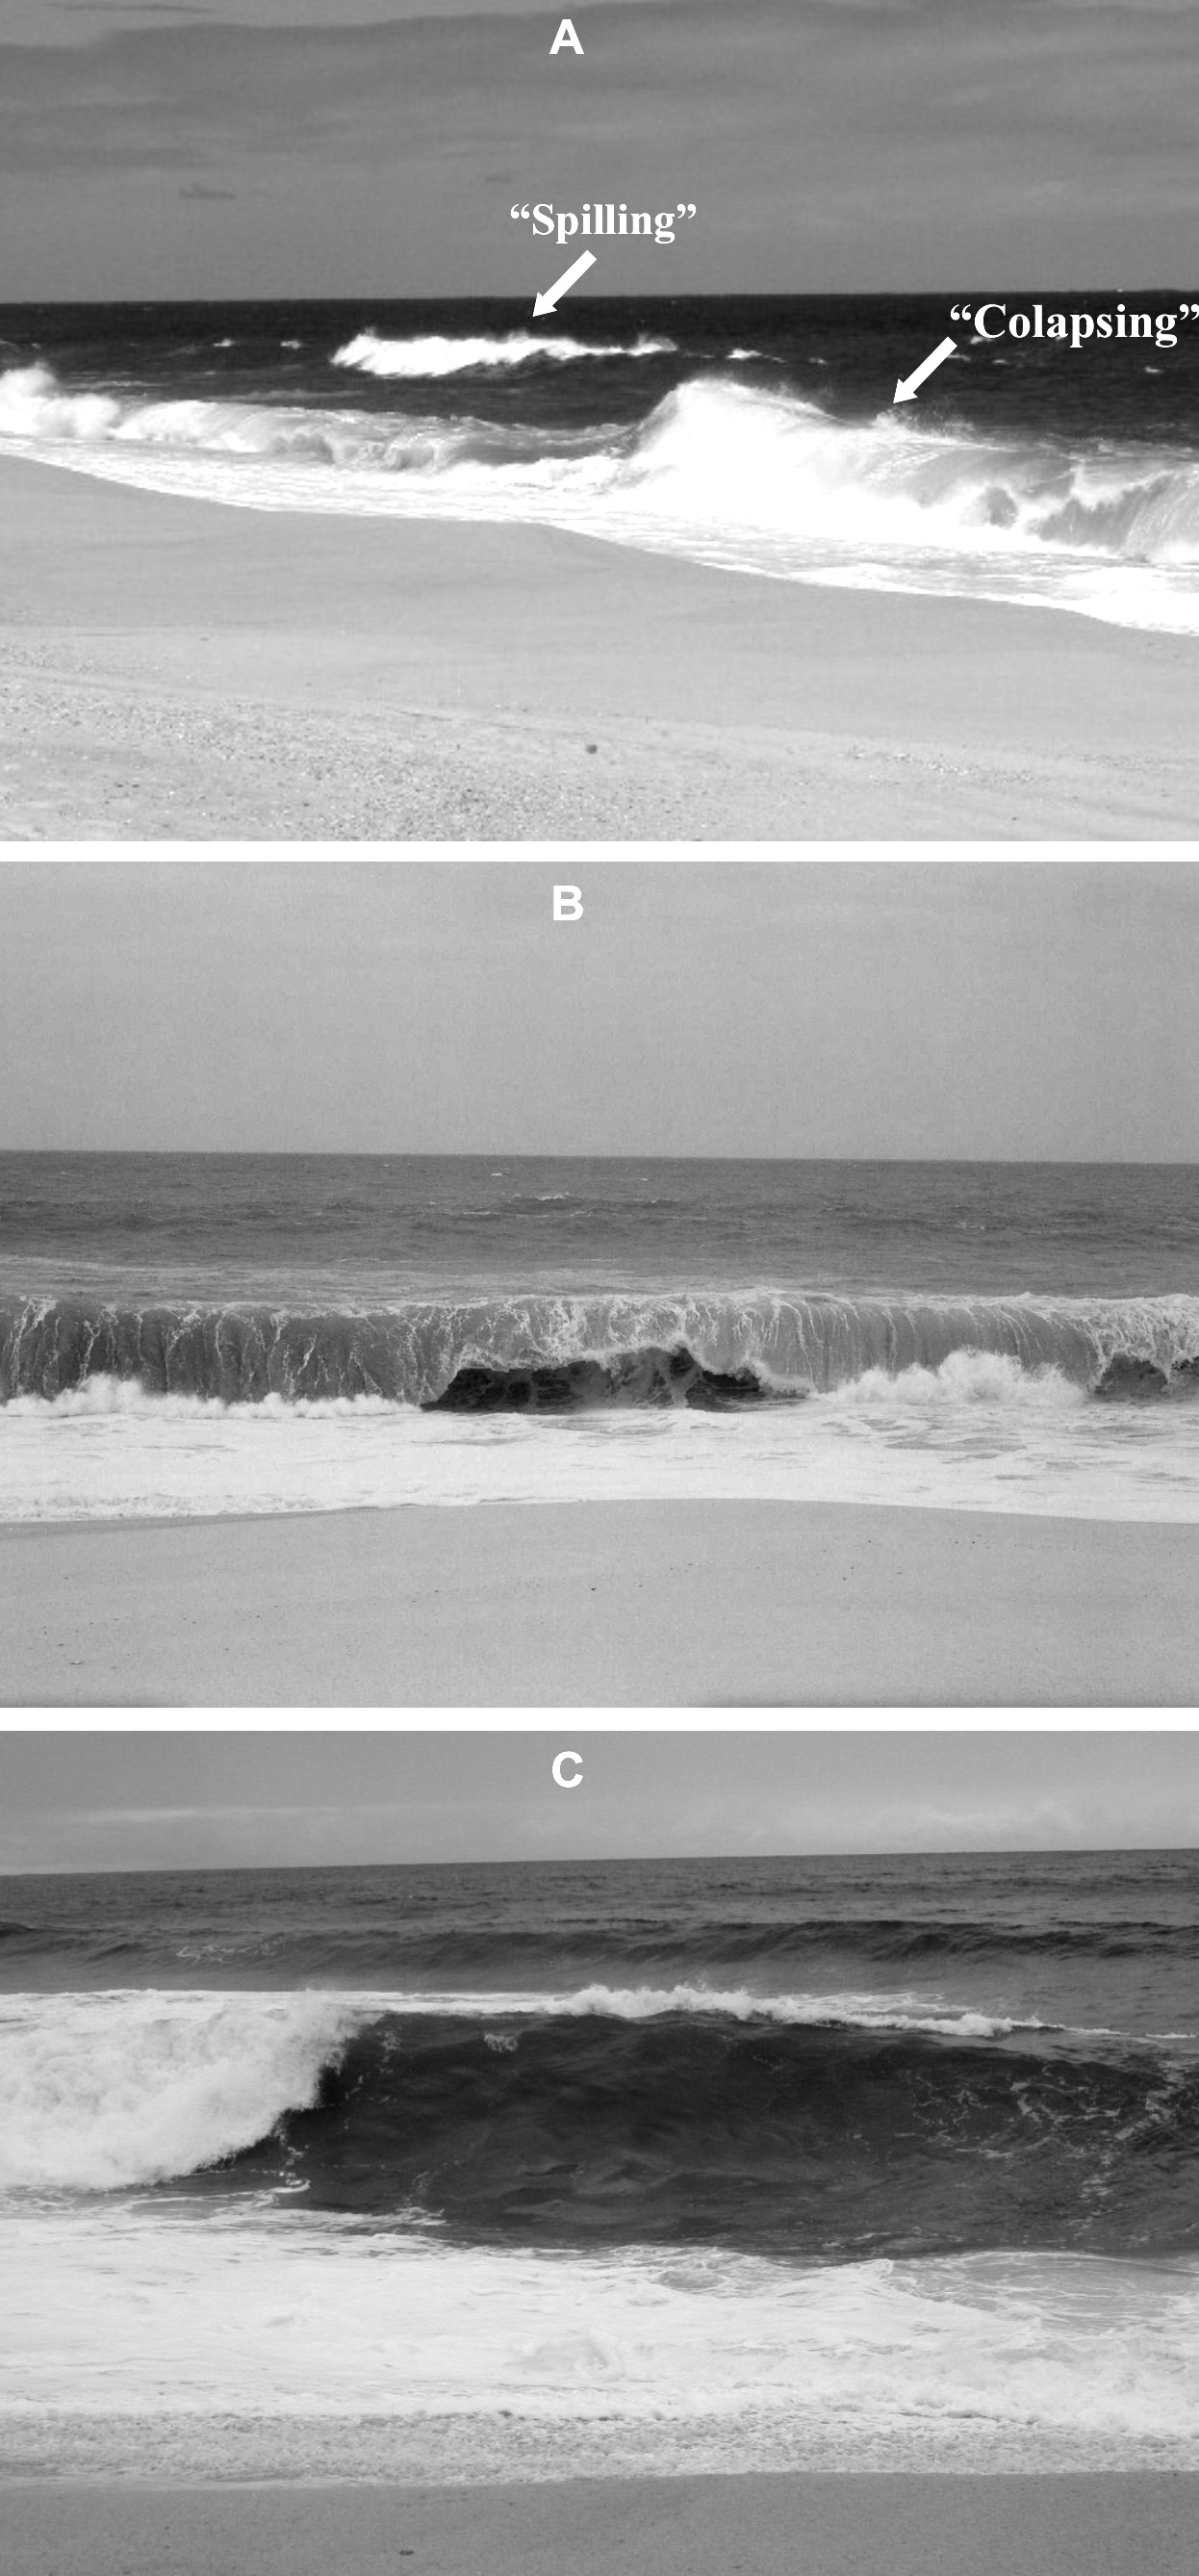 André Luiz Carvalho da Silva et al. Tabela 1 - Coordenadas UTM do ponto inicial dos perfis topográficos de praia.